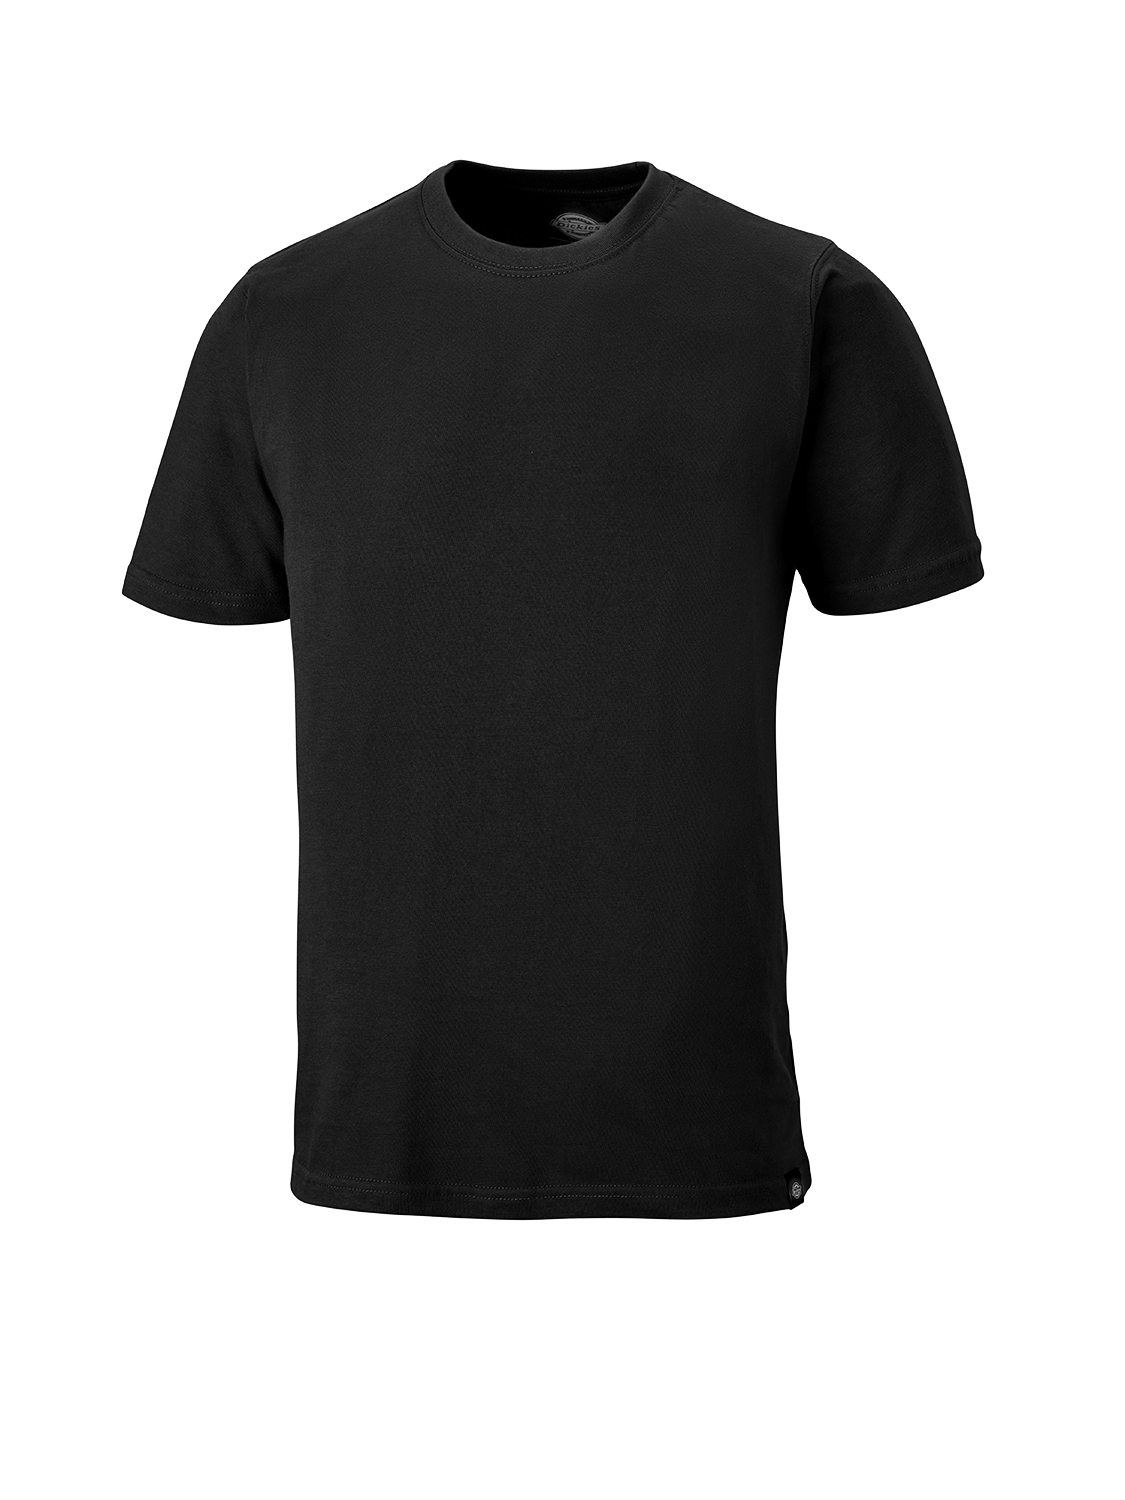 Dickies Unisex T-Shirt schwarz, 100% Baumwolle